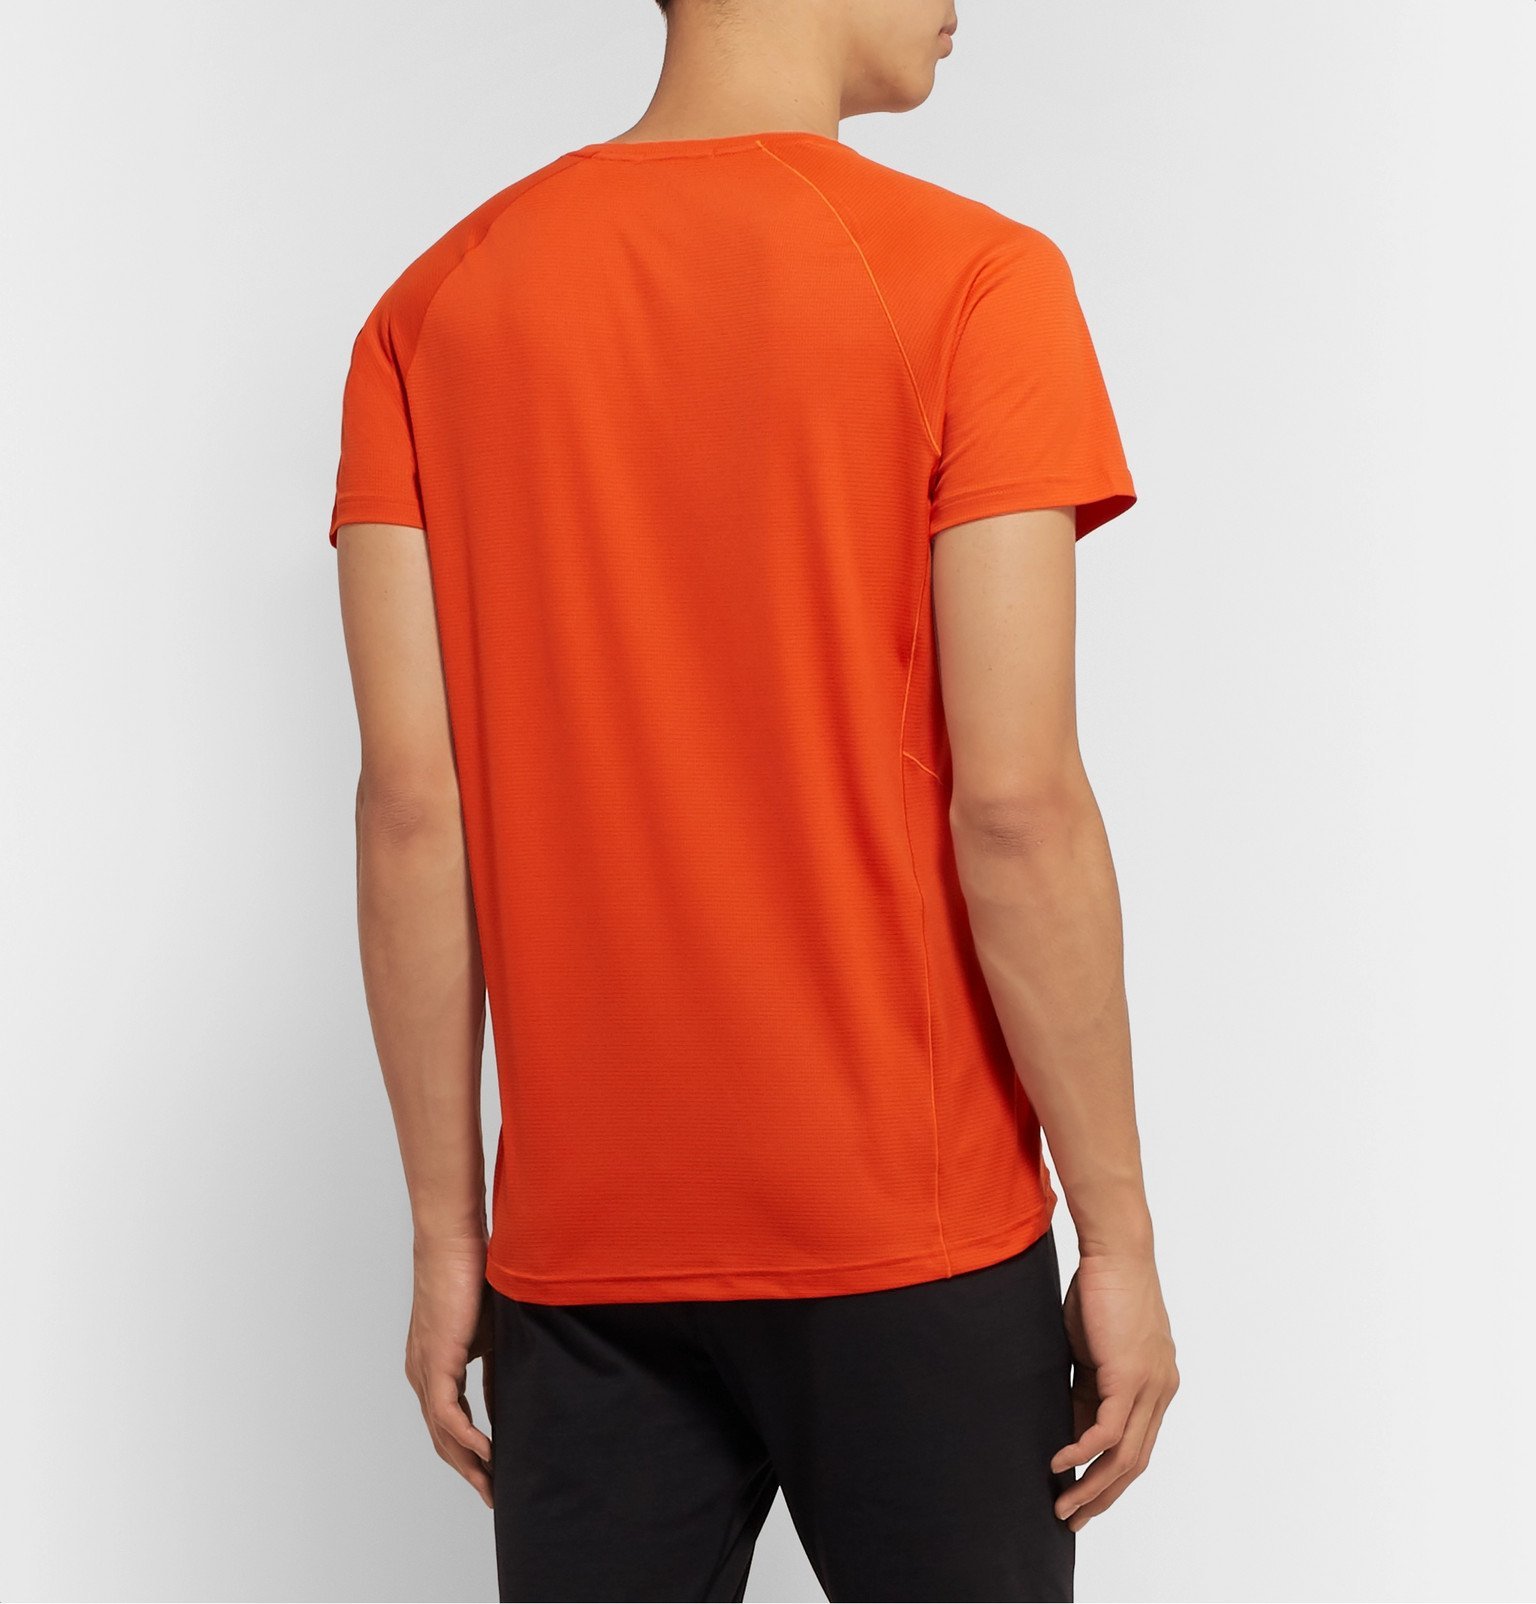 Rab - Pulse Motiv T-Shirt - Orange Rab